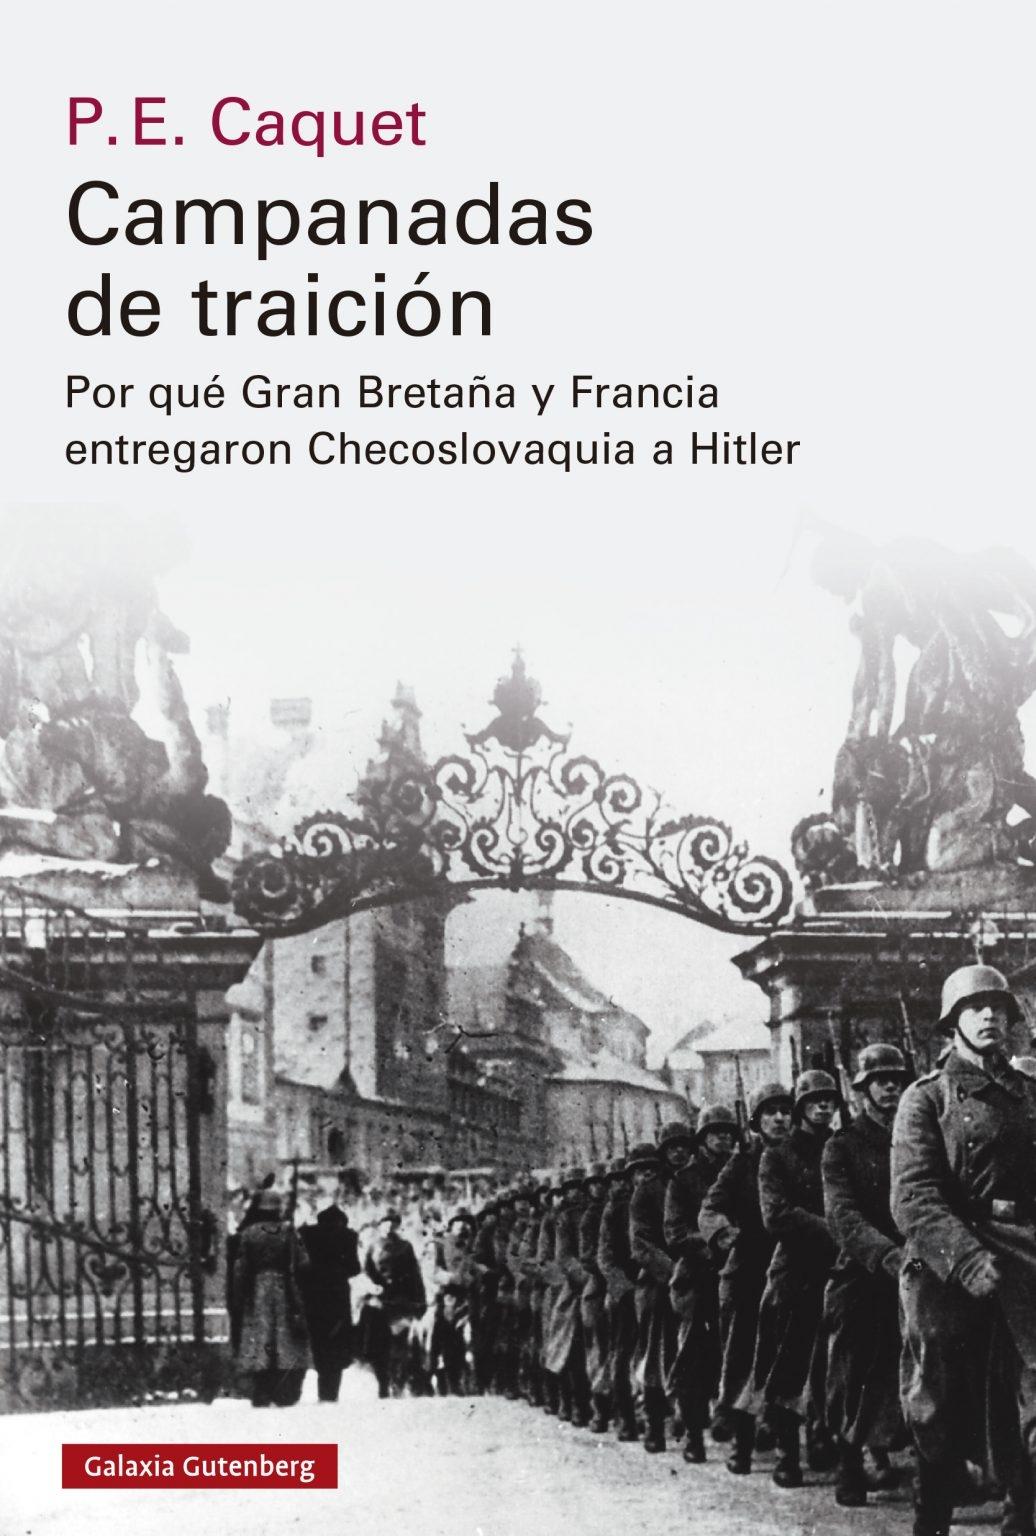 Campanadas de traición "Cómo Gran Bretaña y Francia entregaron Checoslovaquia a Hitler"